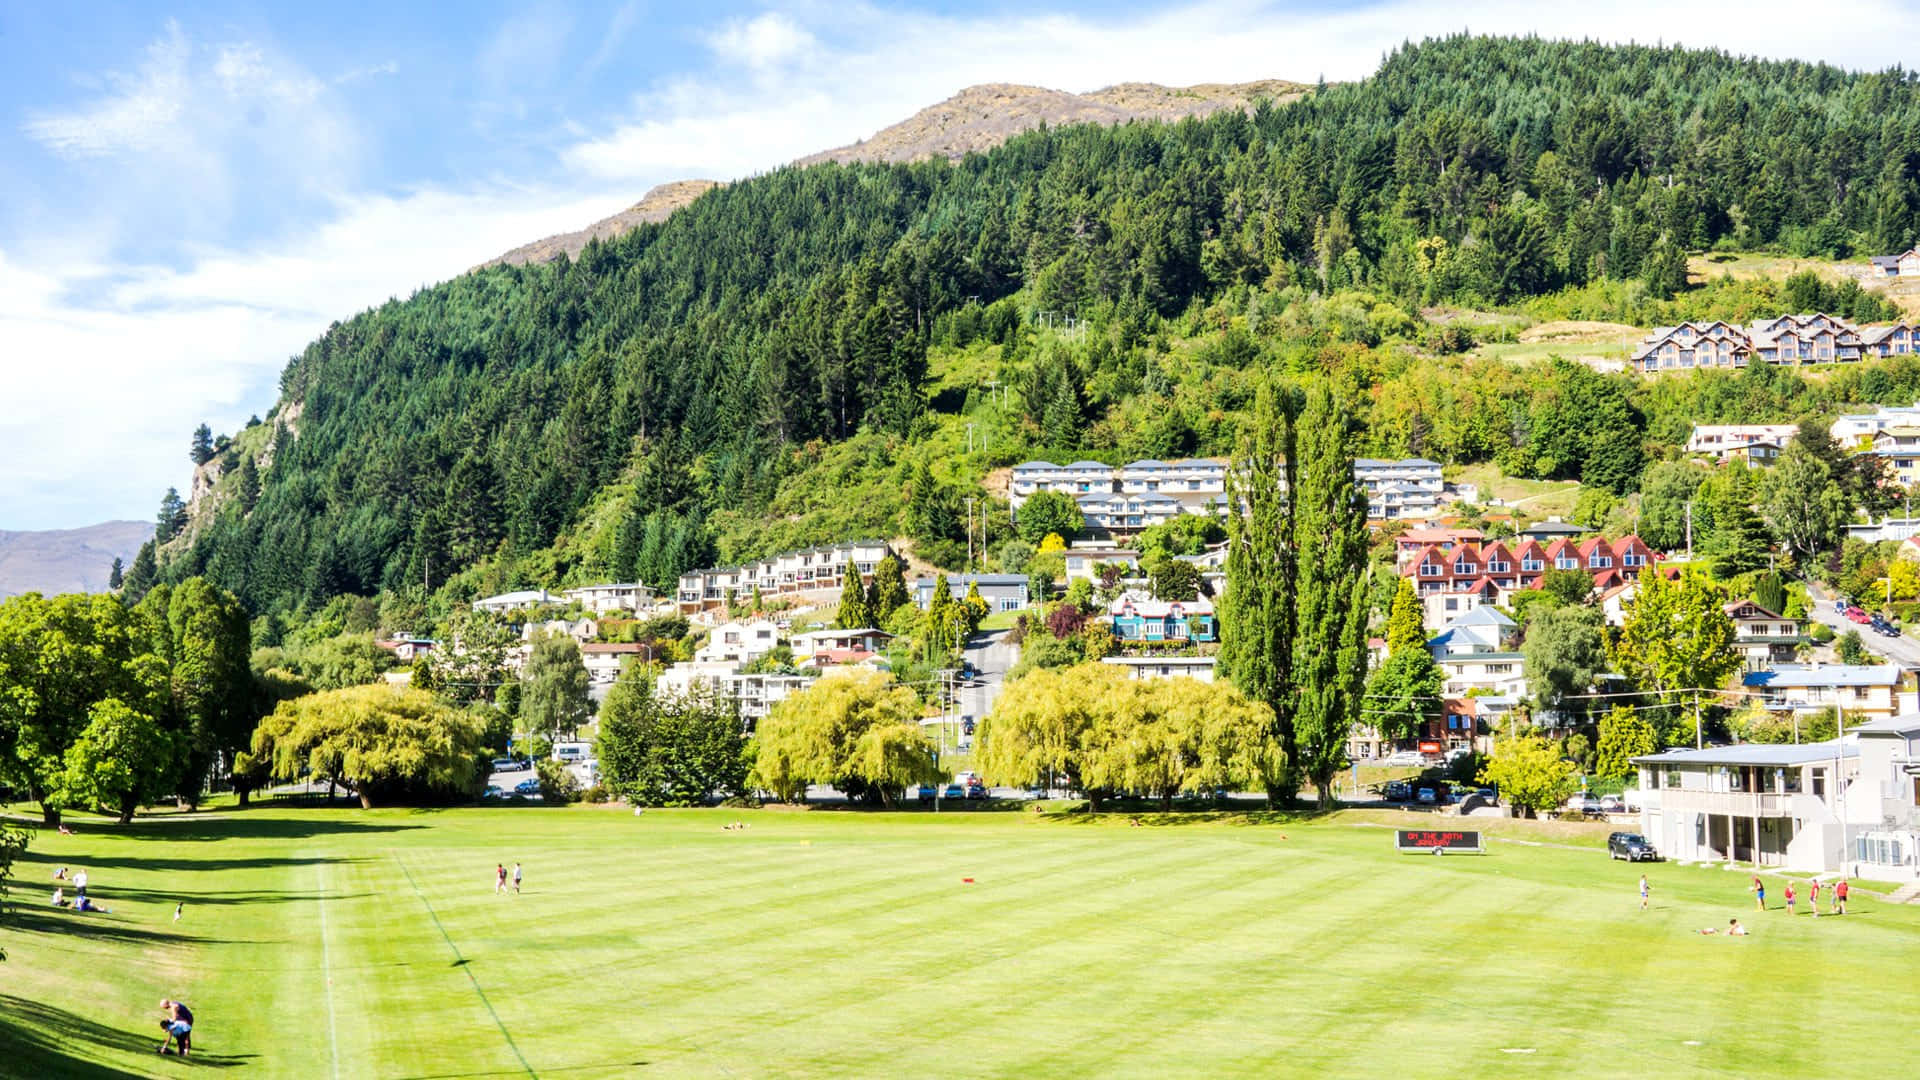 Queenstown New Zealand Cricket Ground Scenic View Wallpaper